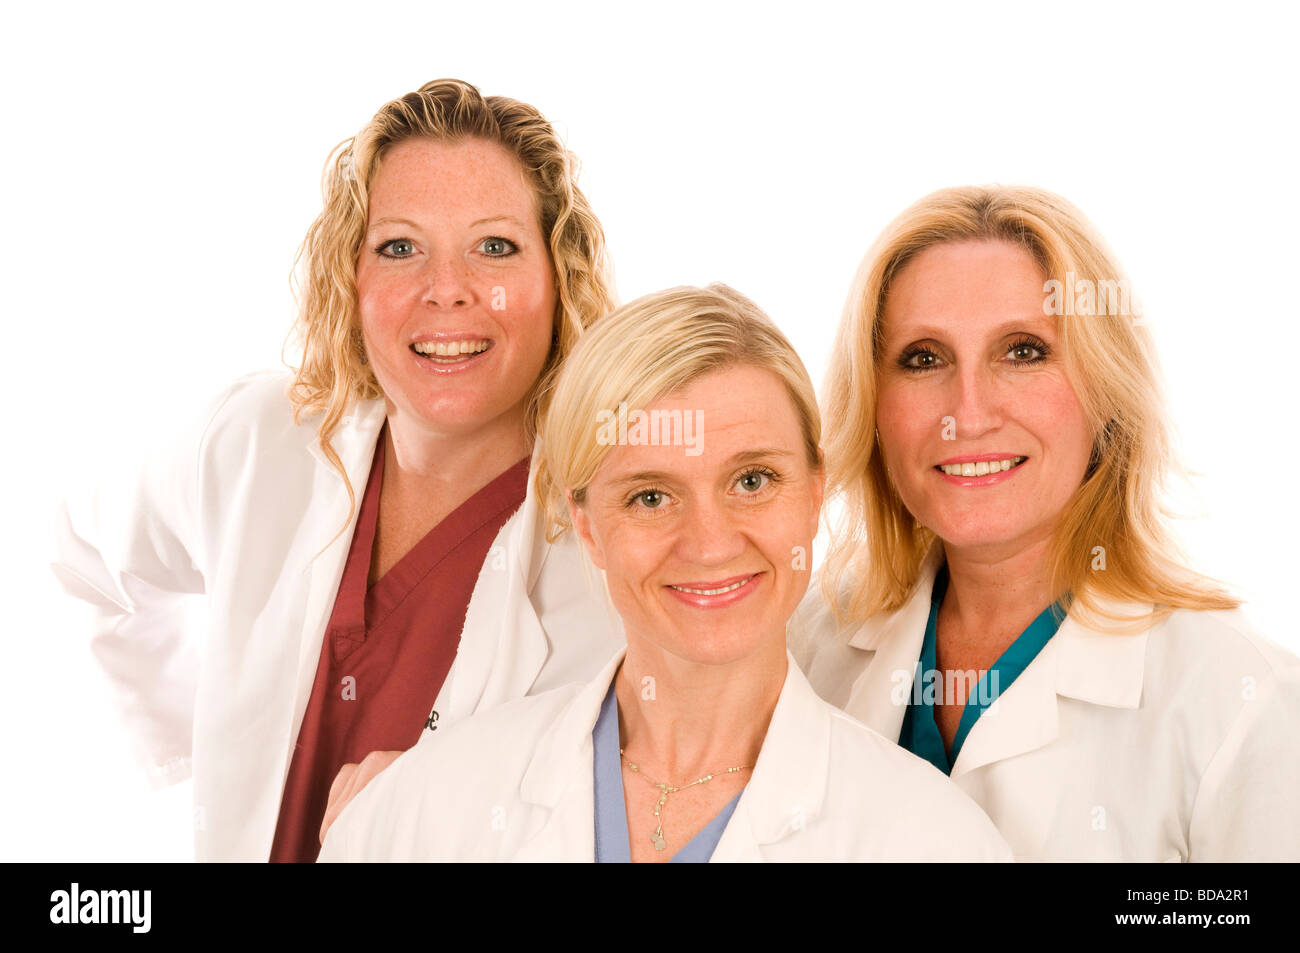 Équipe de trois heureux et confiant les femmes médecins ou infirmières personnel médical portant des vêtements colorés et gommages sarraus de laboratoire Banque D'Images